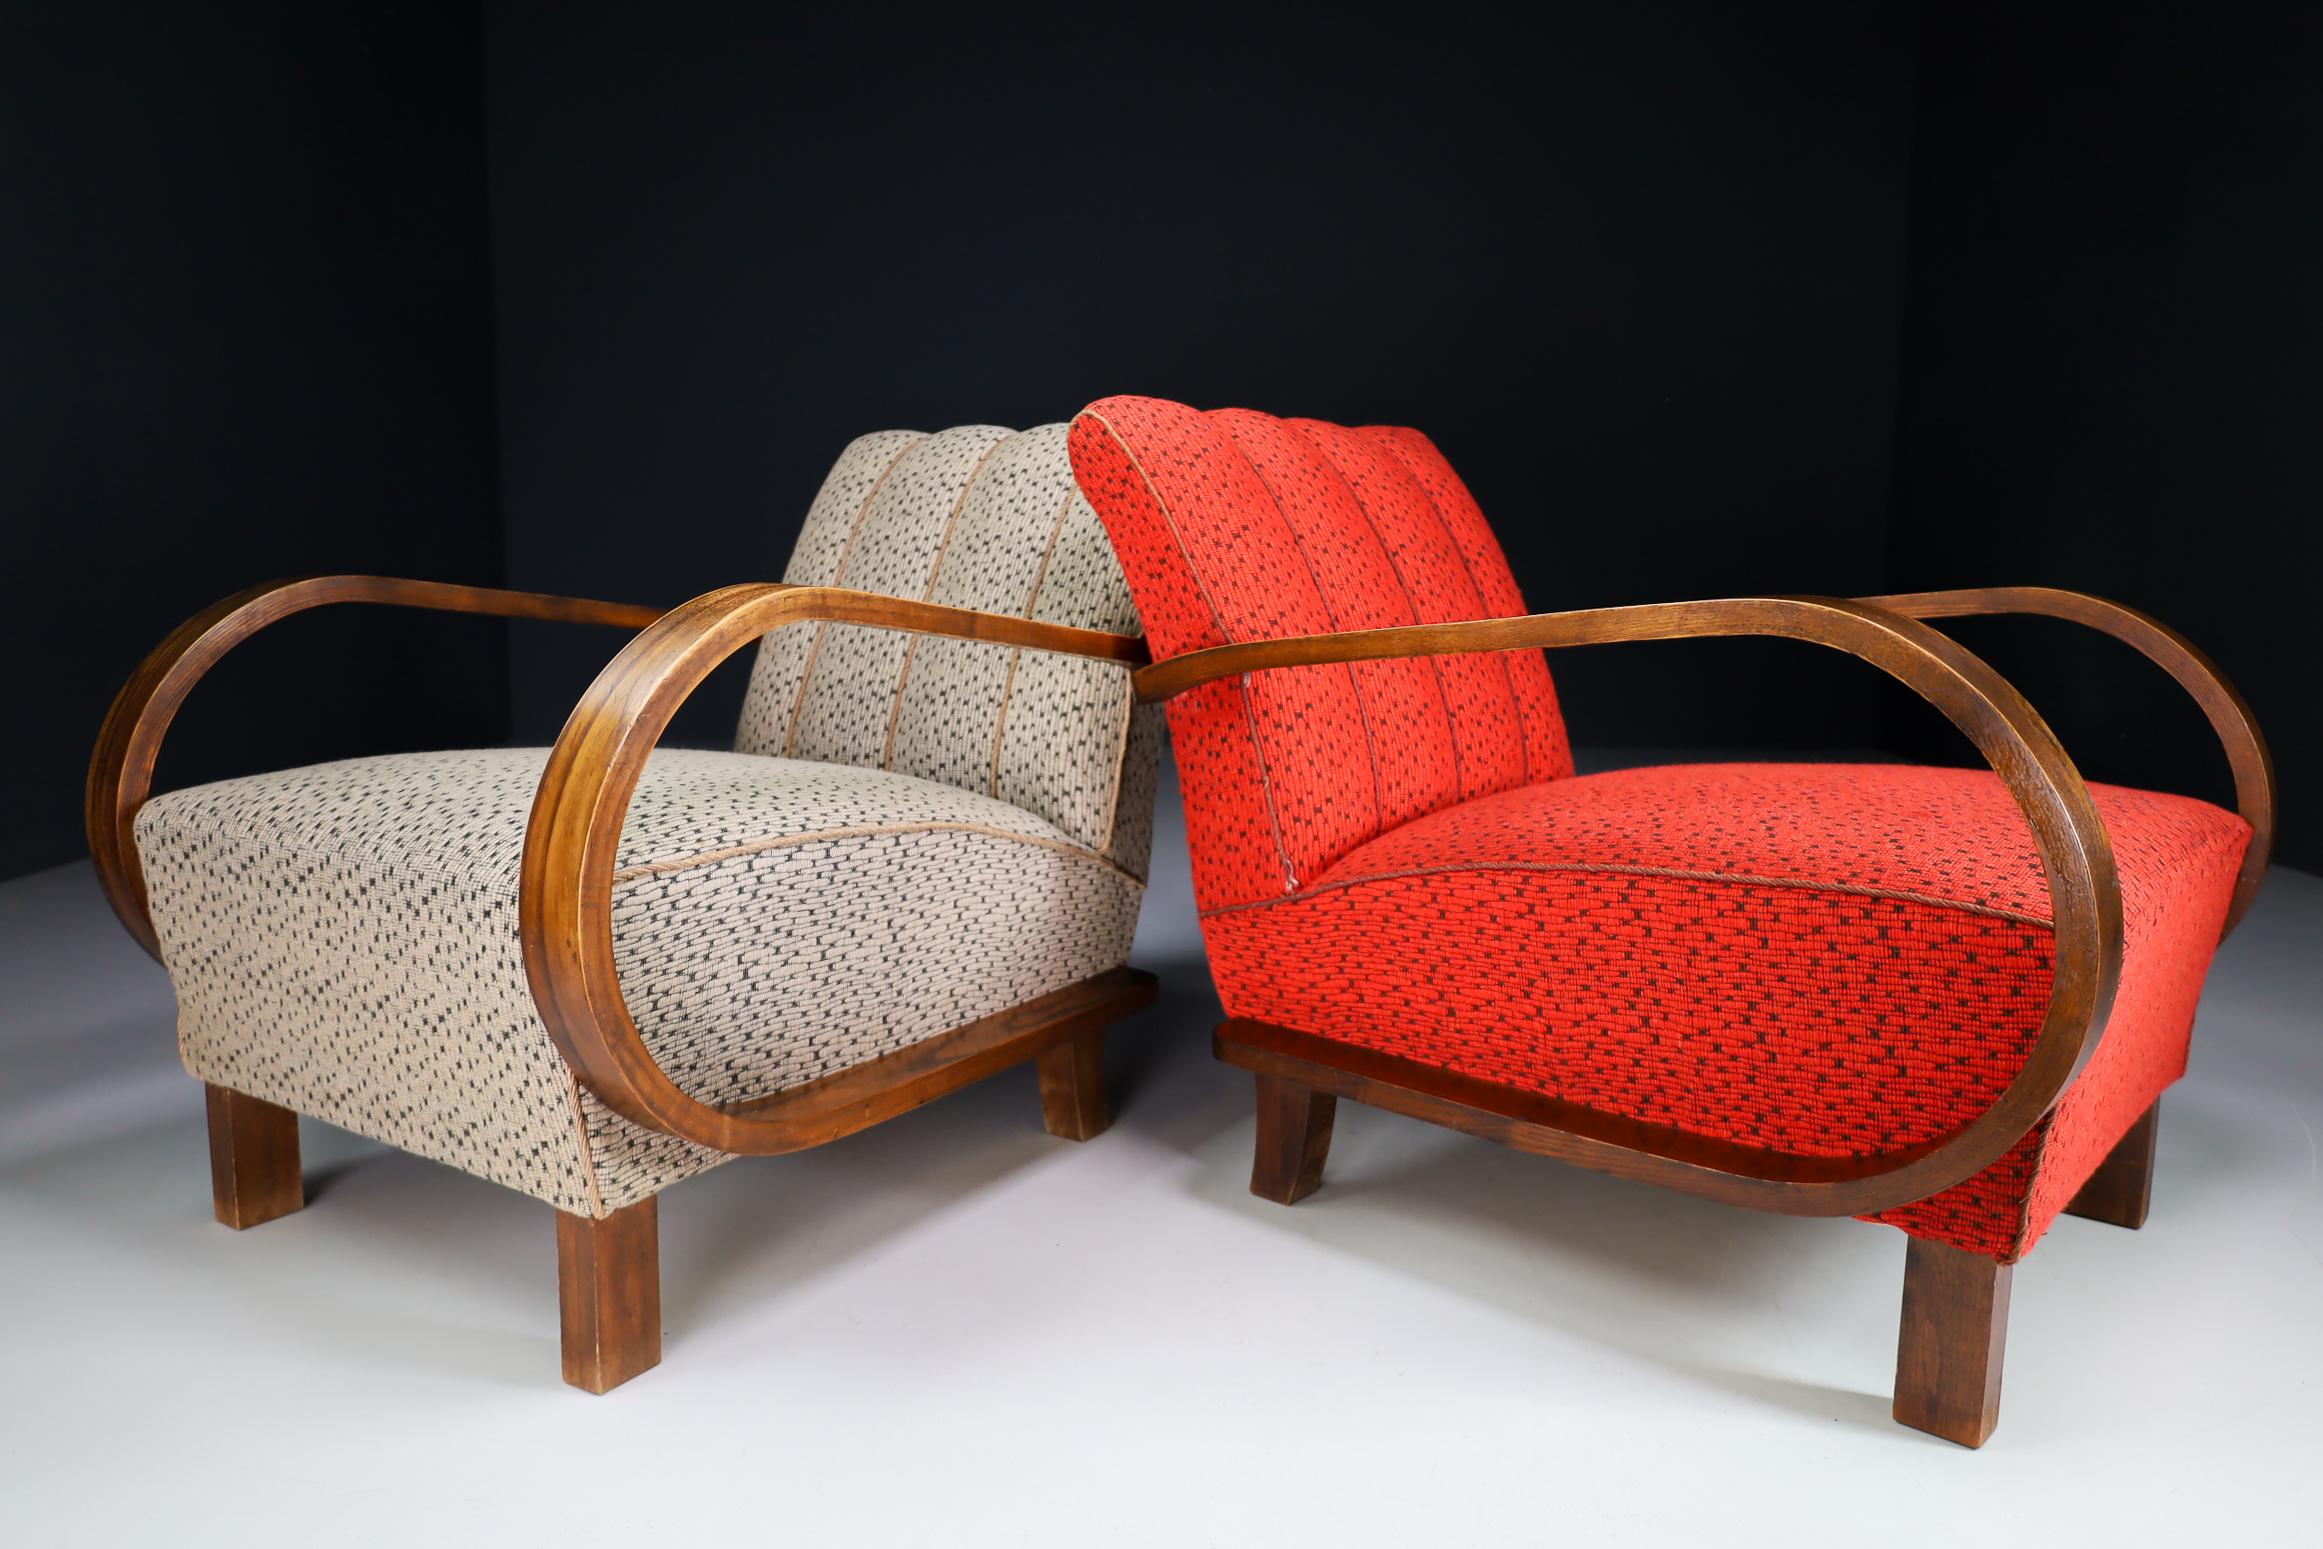 Paire de deux fauteuils ou chaises de salon Art-Déco originaux fabriqués et conçus en Autriche dans les années 1920. Fabriqué en bois courbé et avec le tissu d'origine. Ces fauteuils attireront l'attention dans n'importe quel intérieur, qu'il